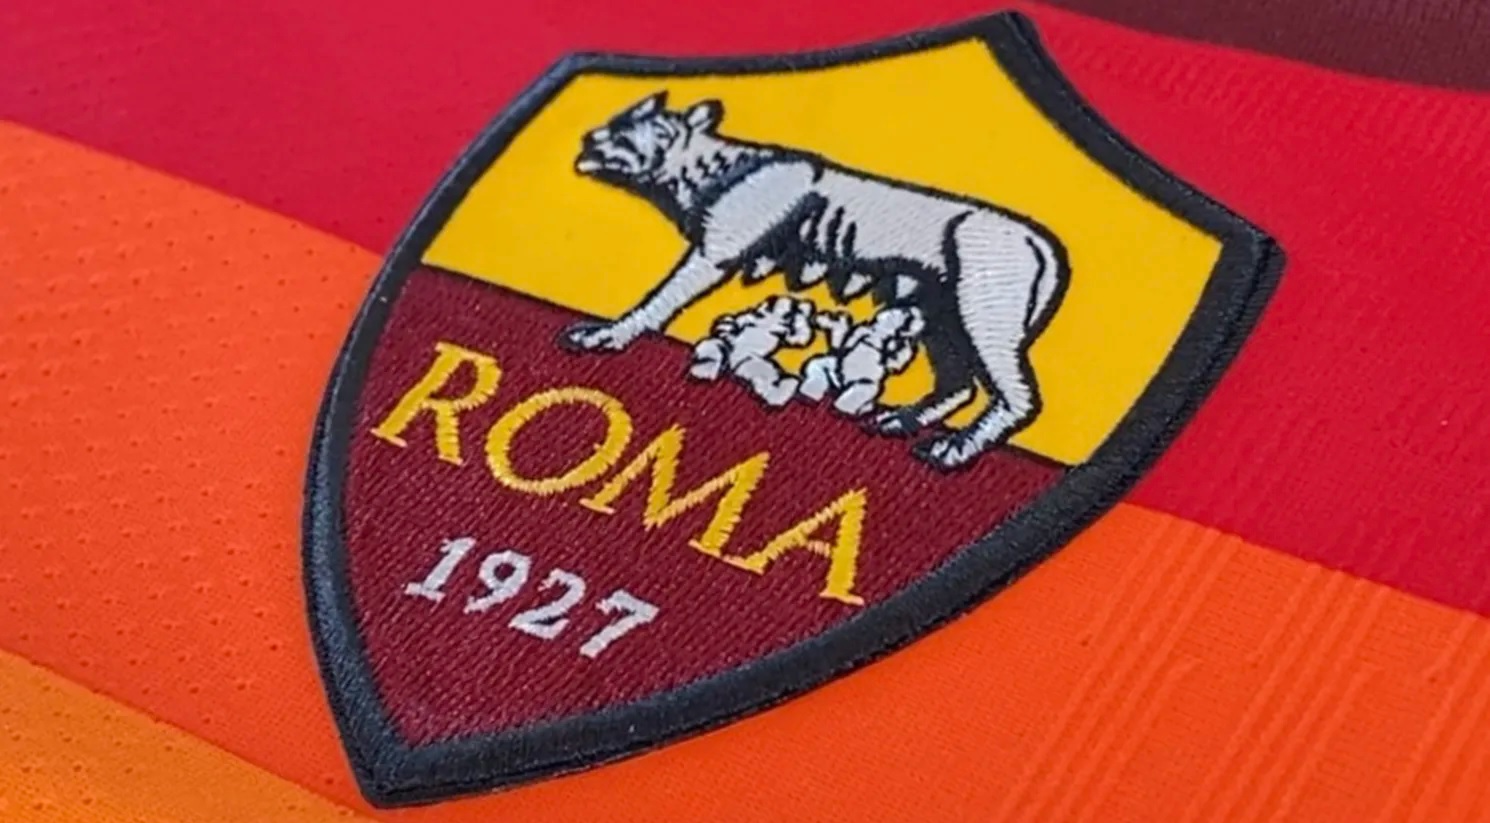 L'écusson de l'AS Roma